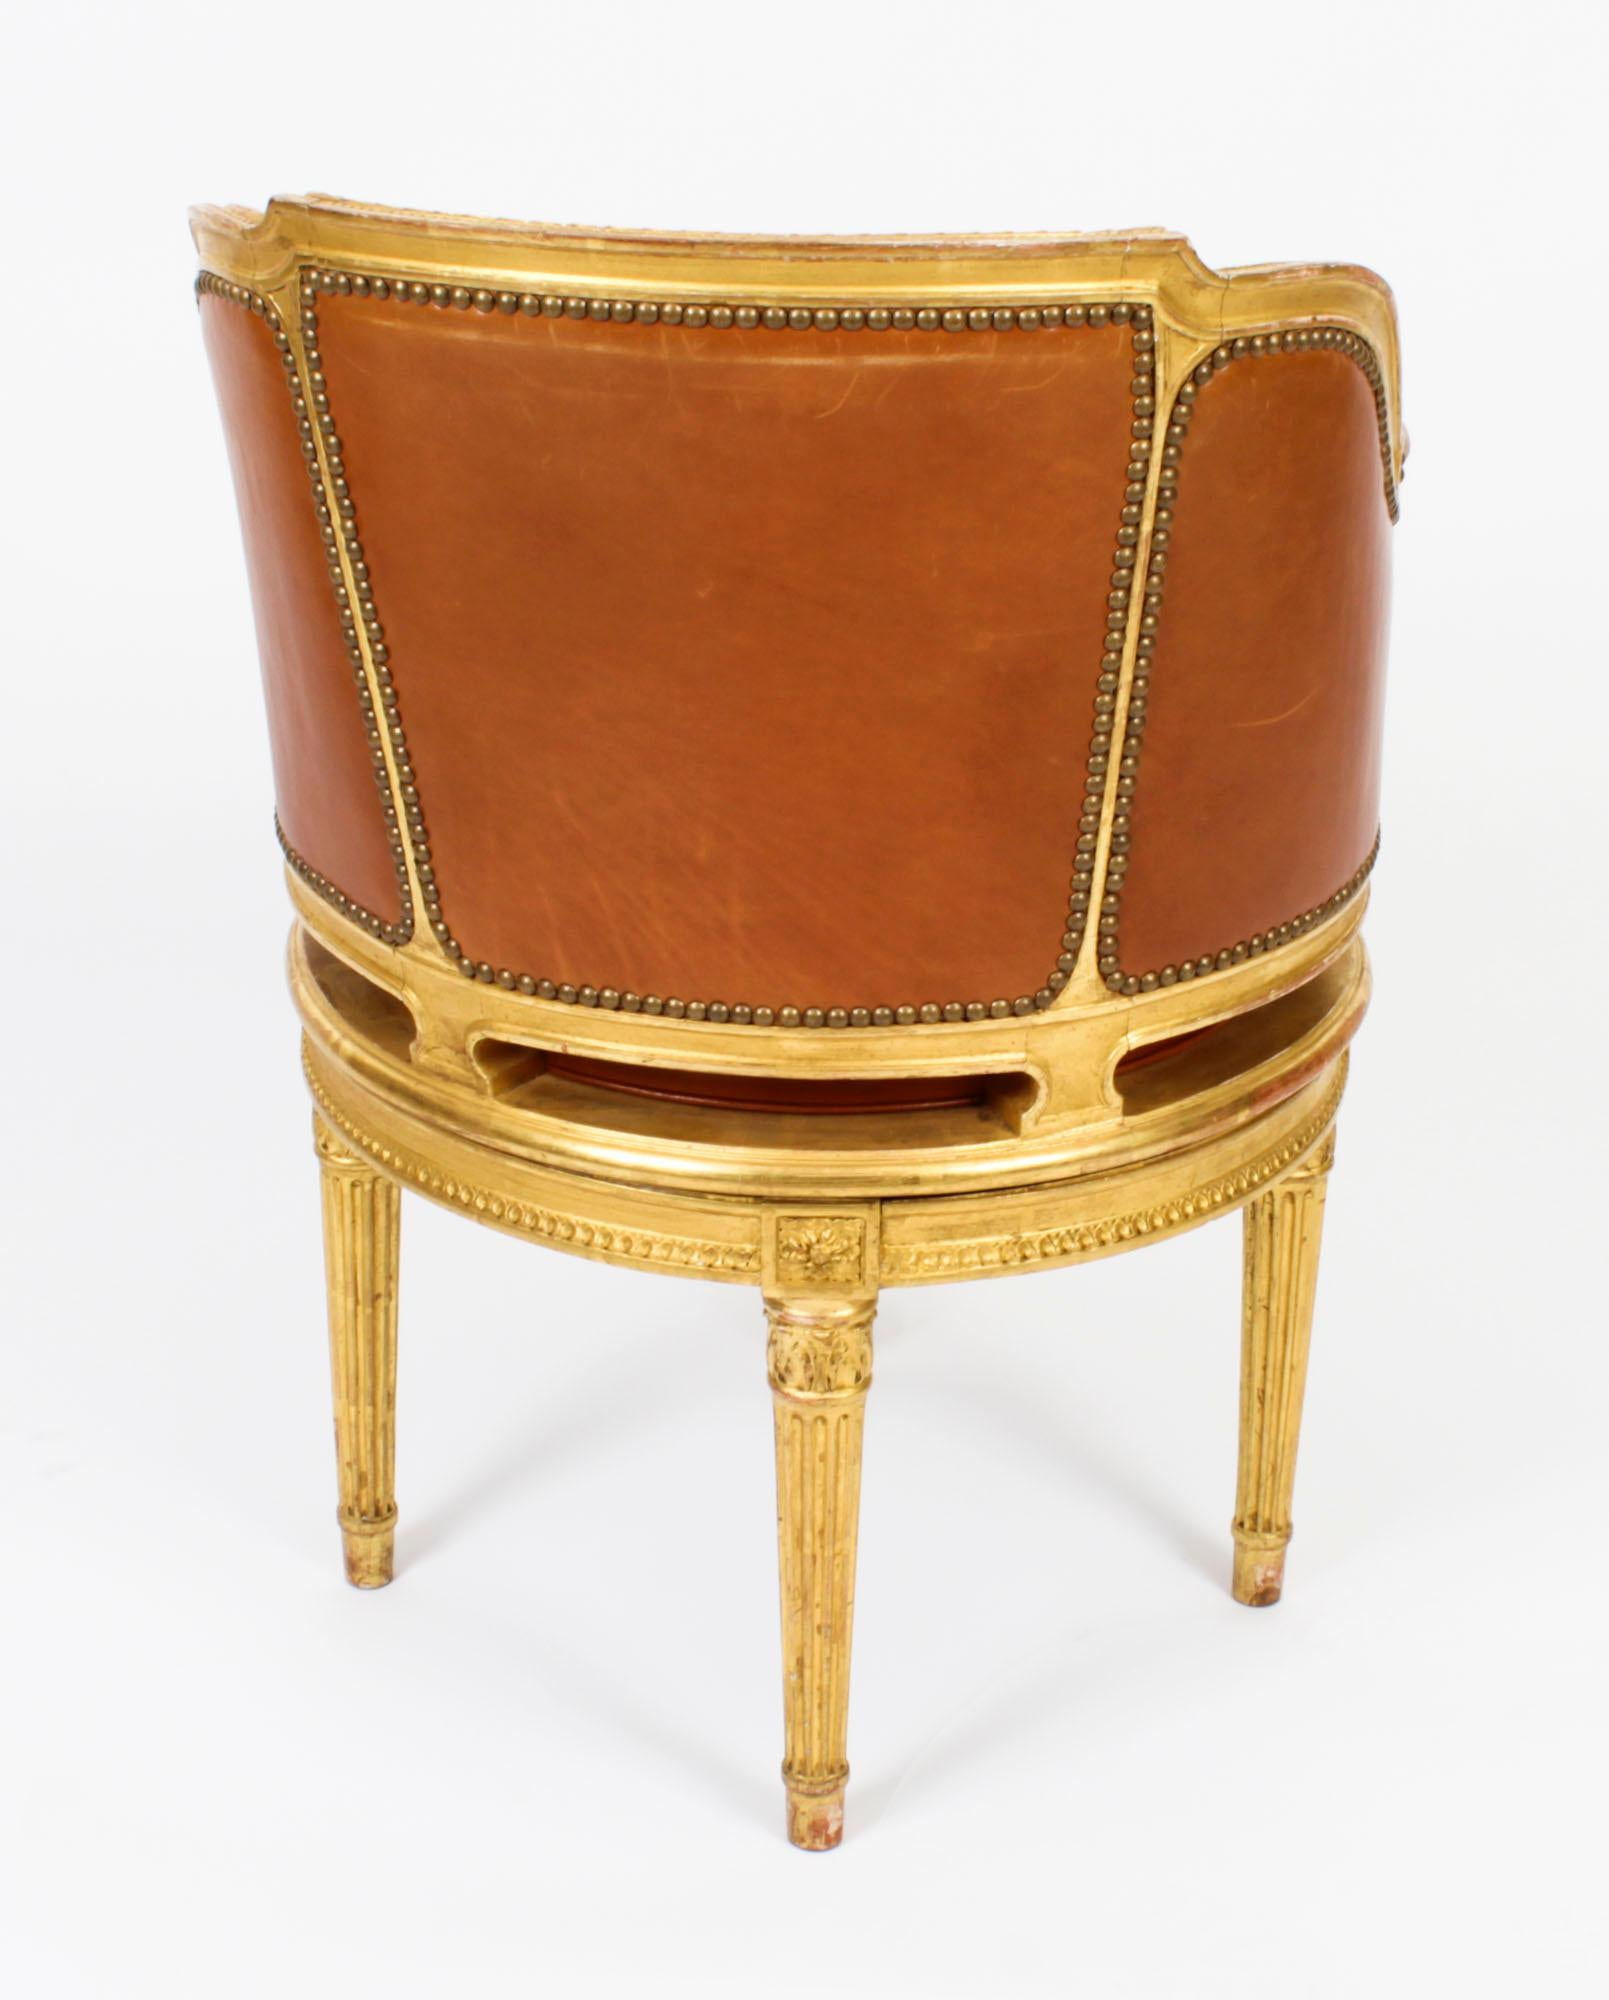 Antique French Louis Revival Revolving Fauteuil de Bureau Desk Chair 19th C. 9